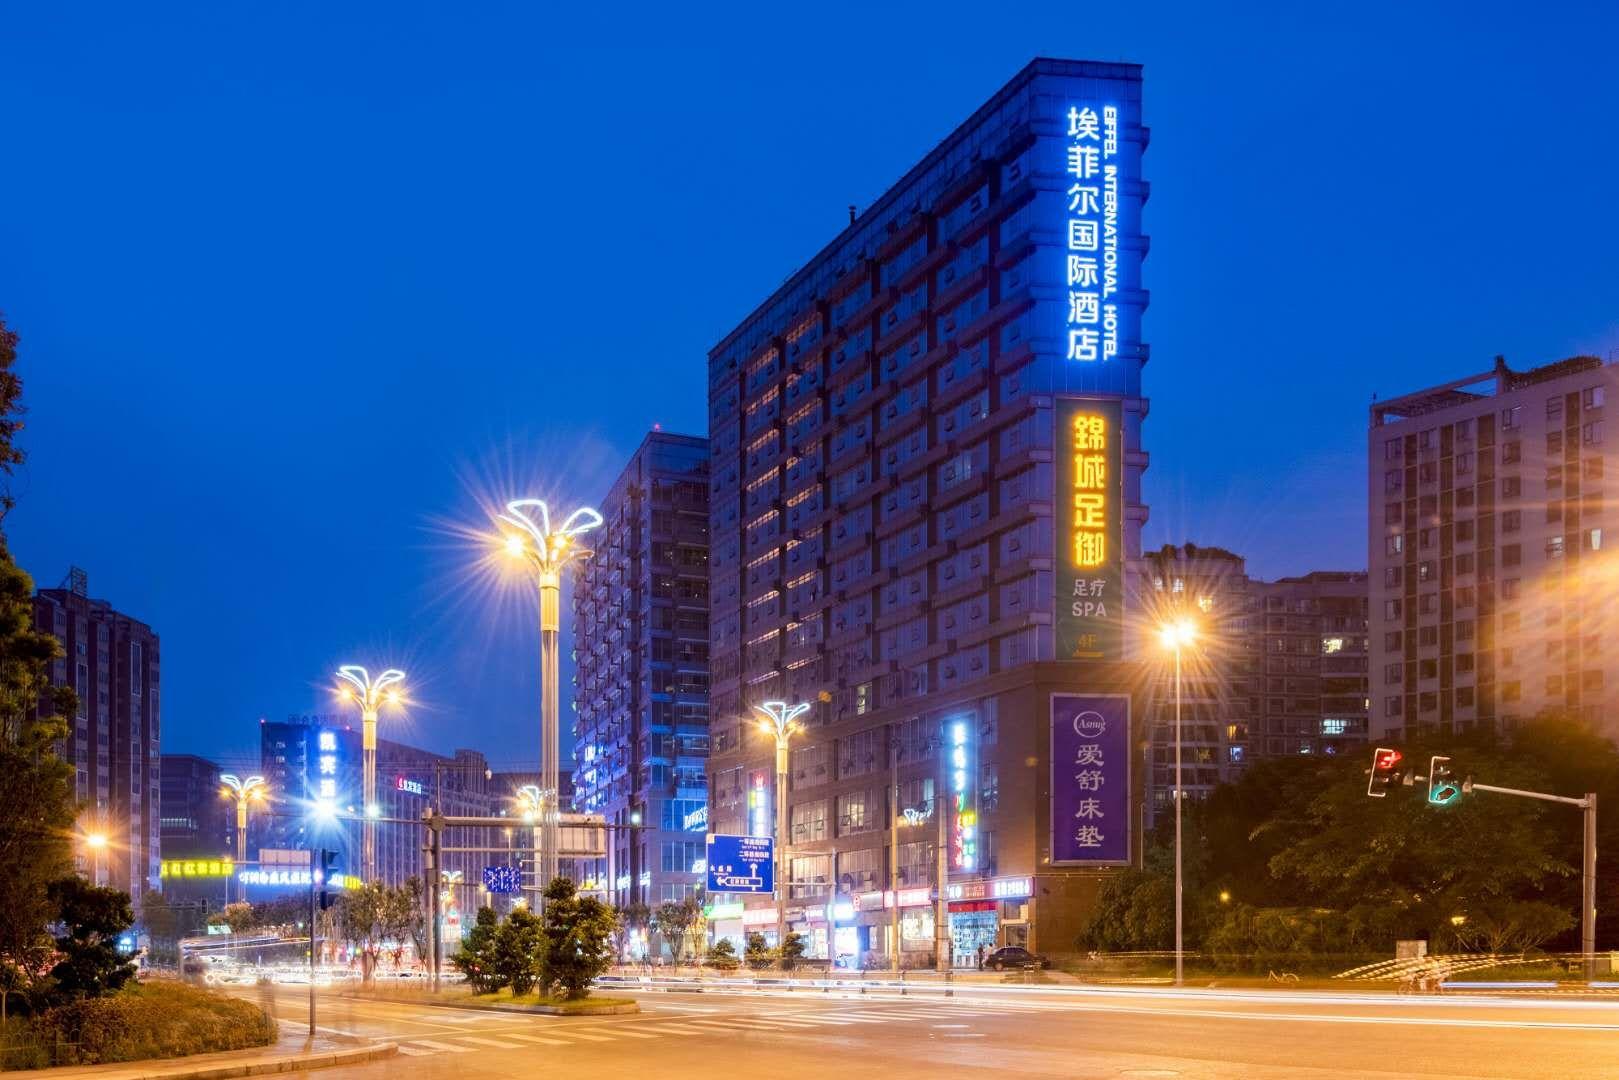 成都四星级酒店最大容纳300人的会议场地|成都寅腾埃菲尔国际酒店的价格与联系方式